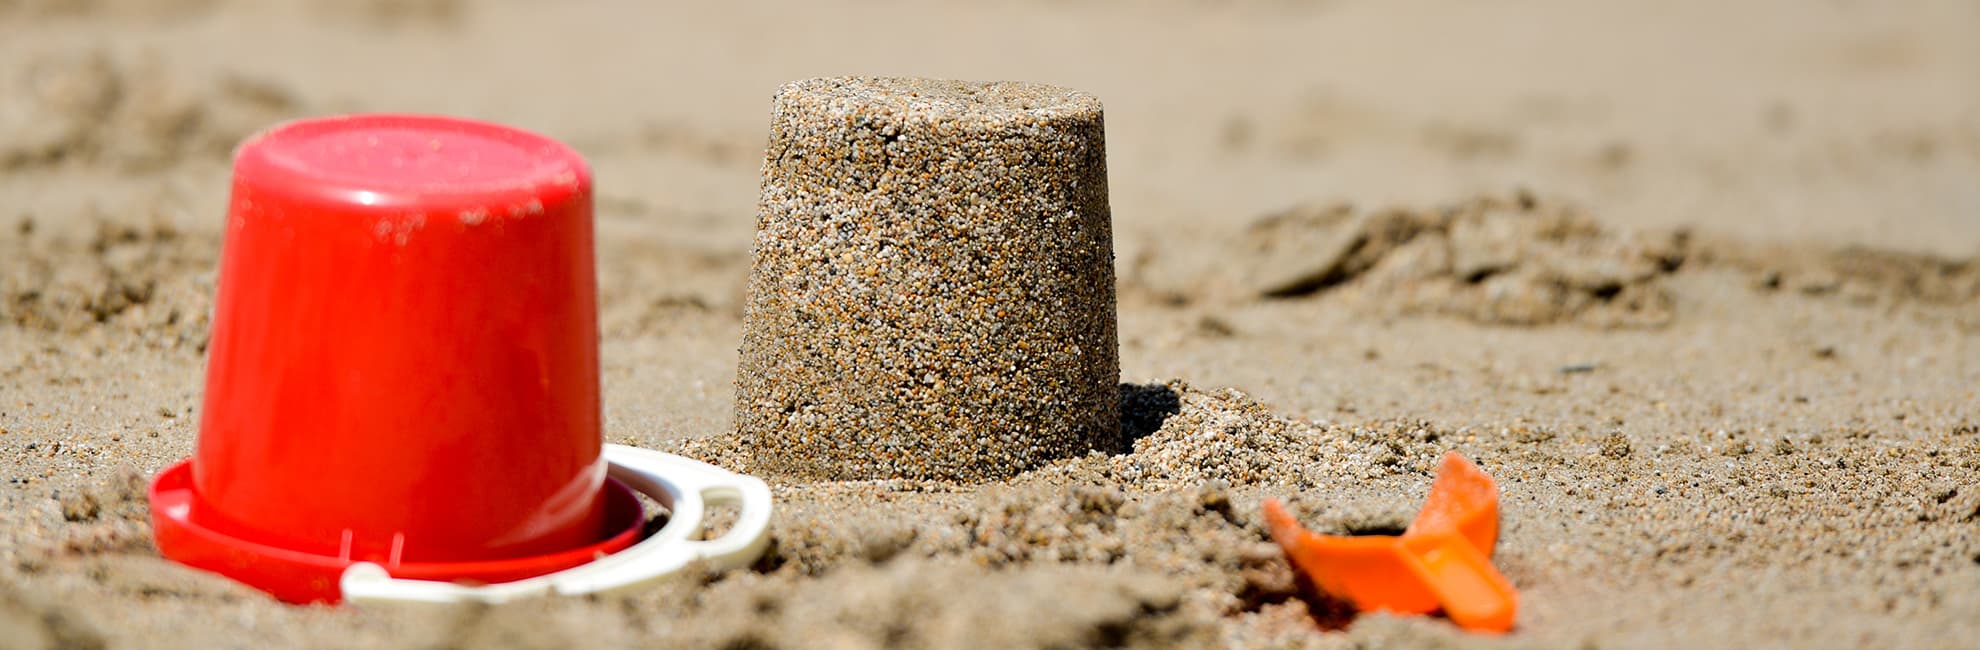 Building sandcastles on the beach